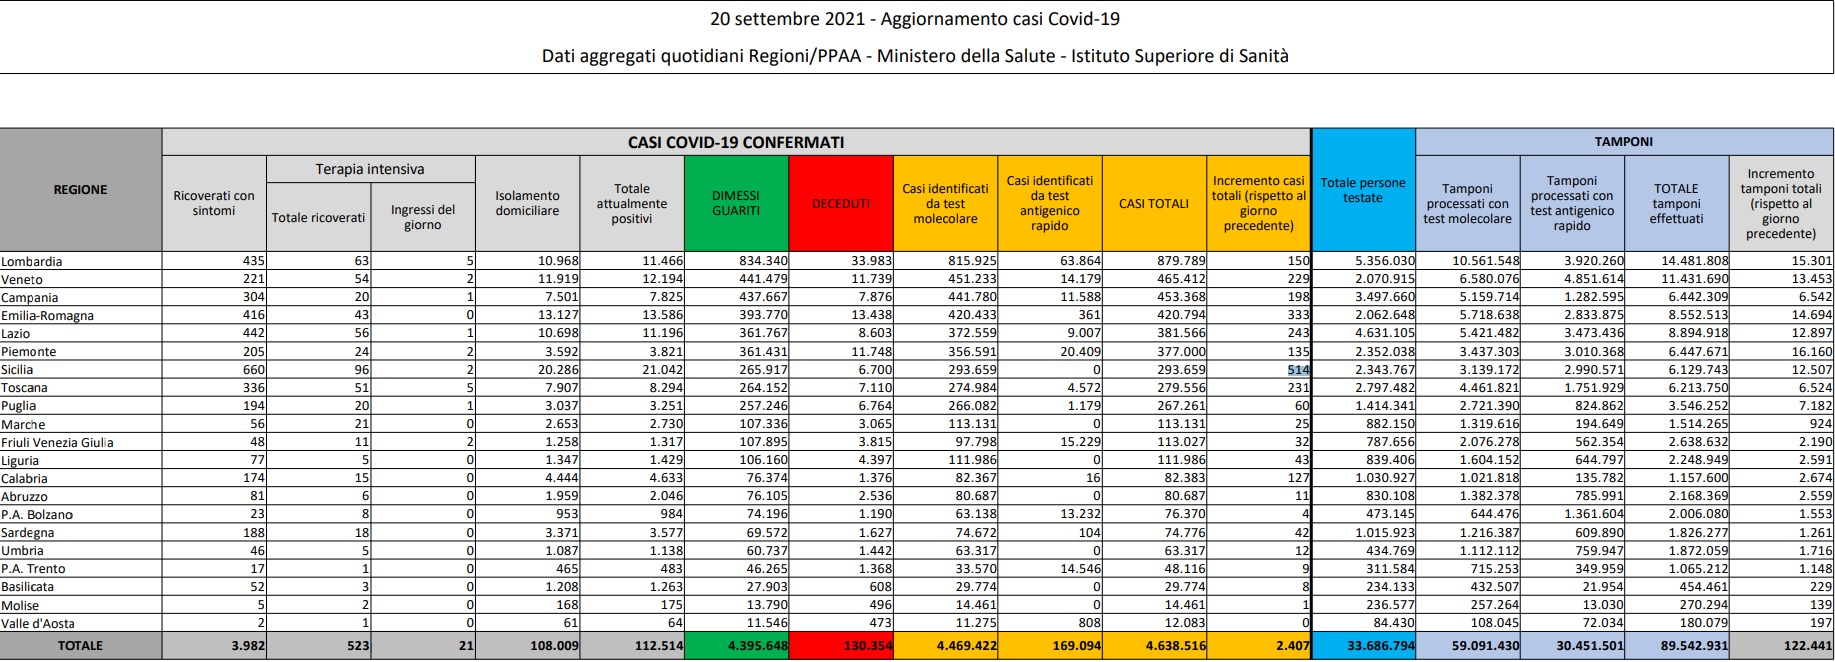 Registrati 2.407 nuovi casi di Covid e 44 decessi